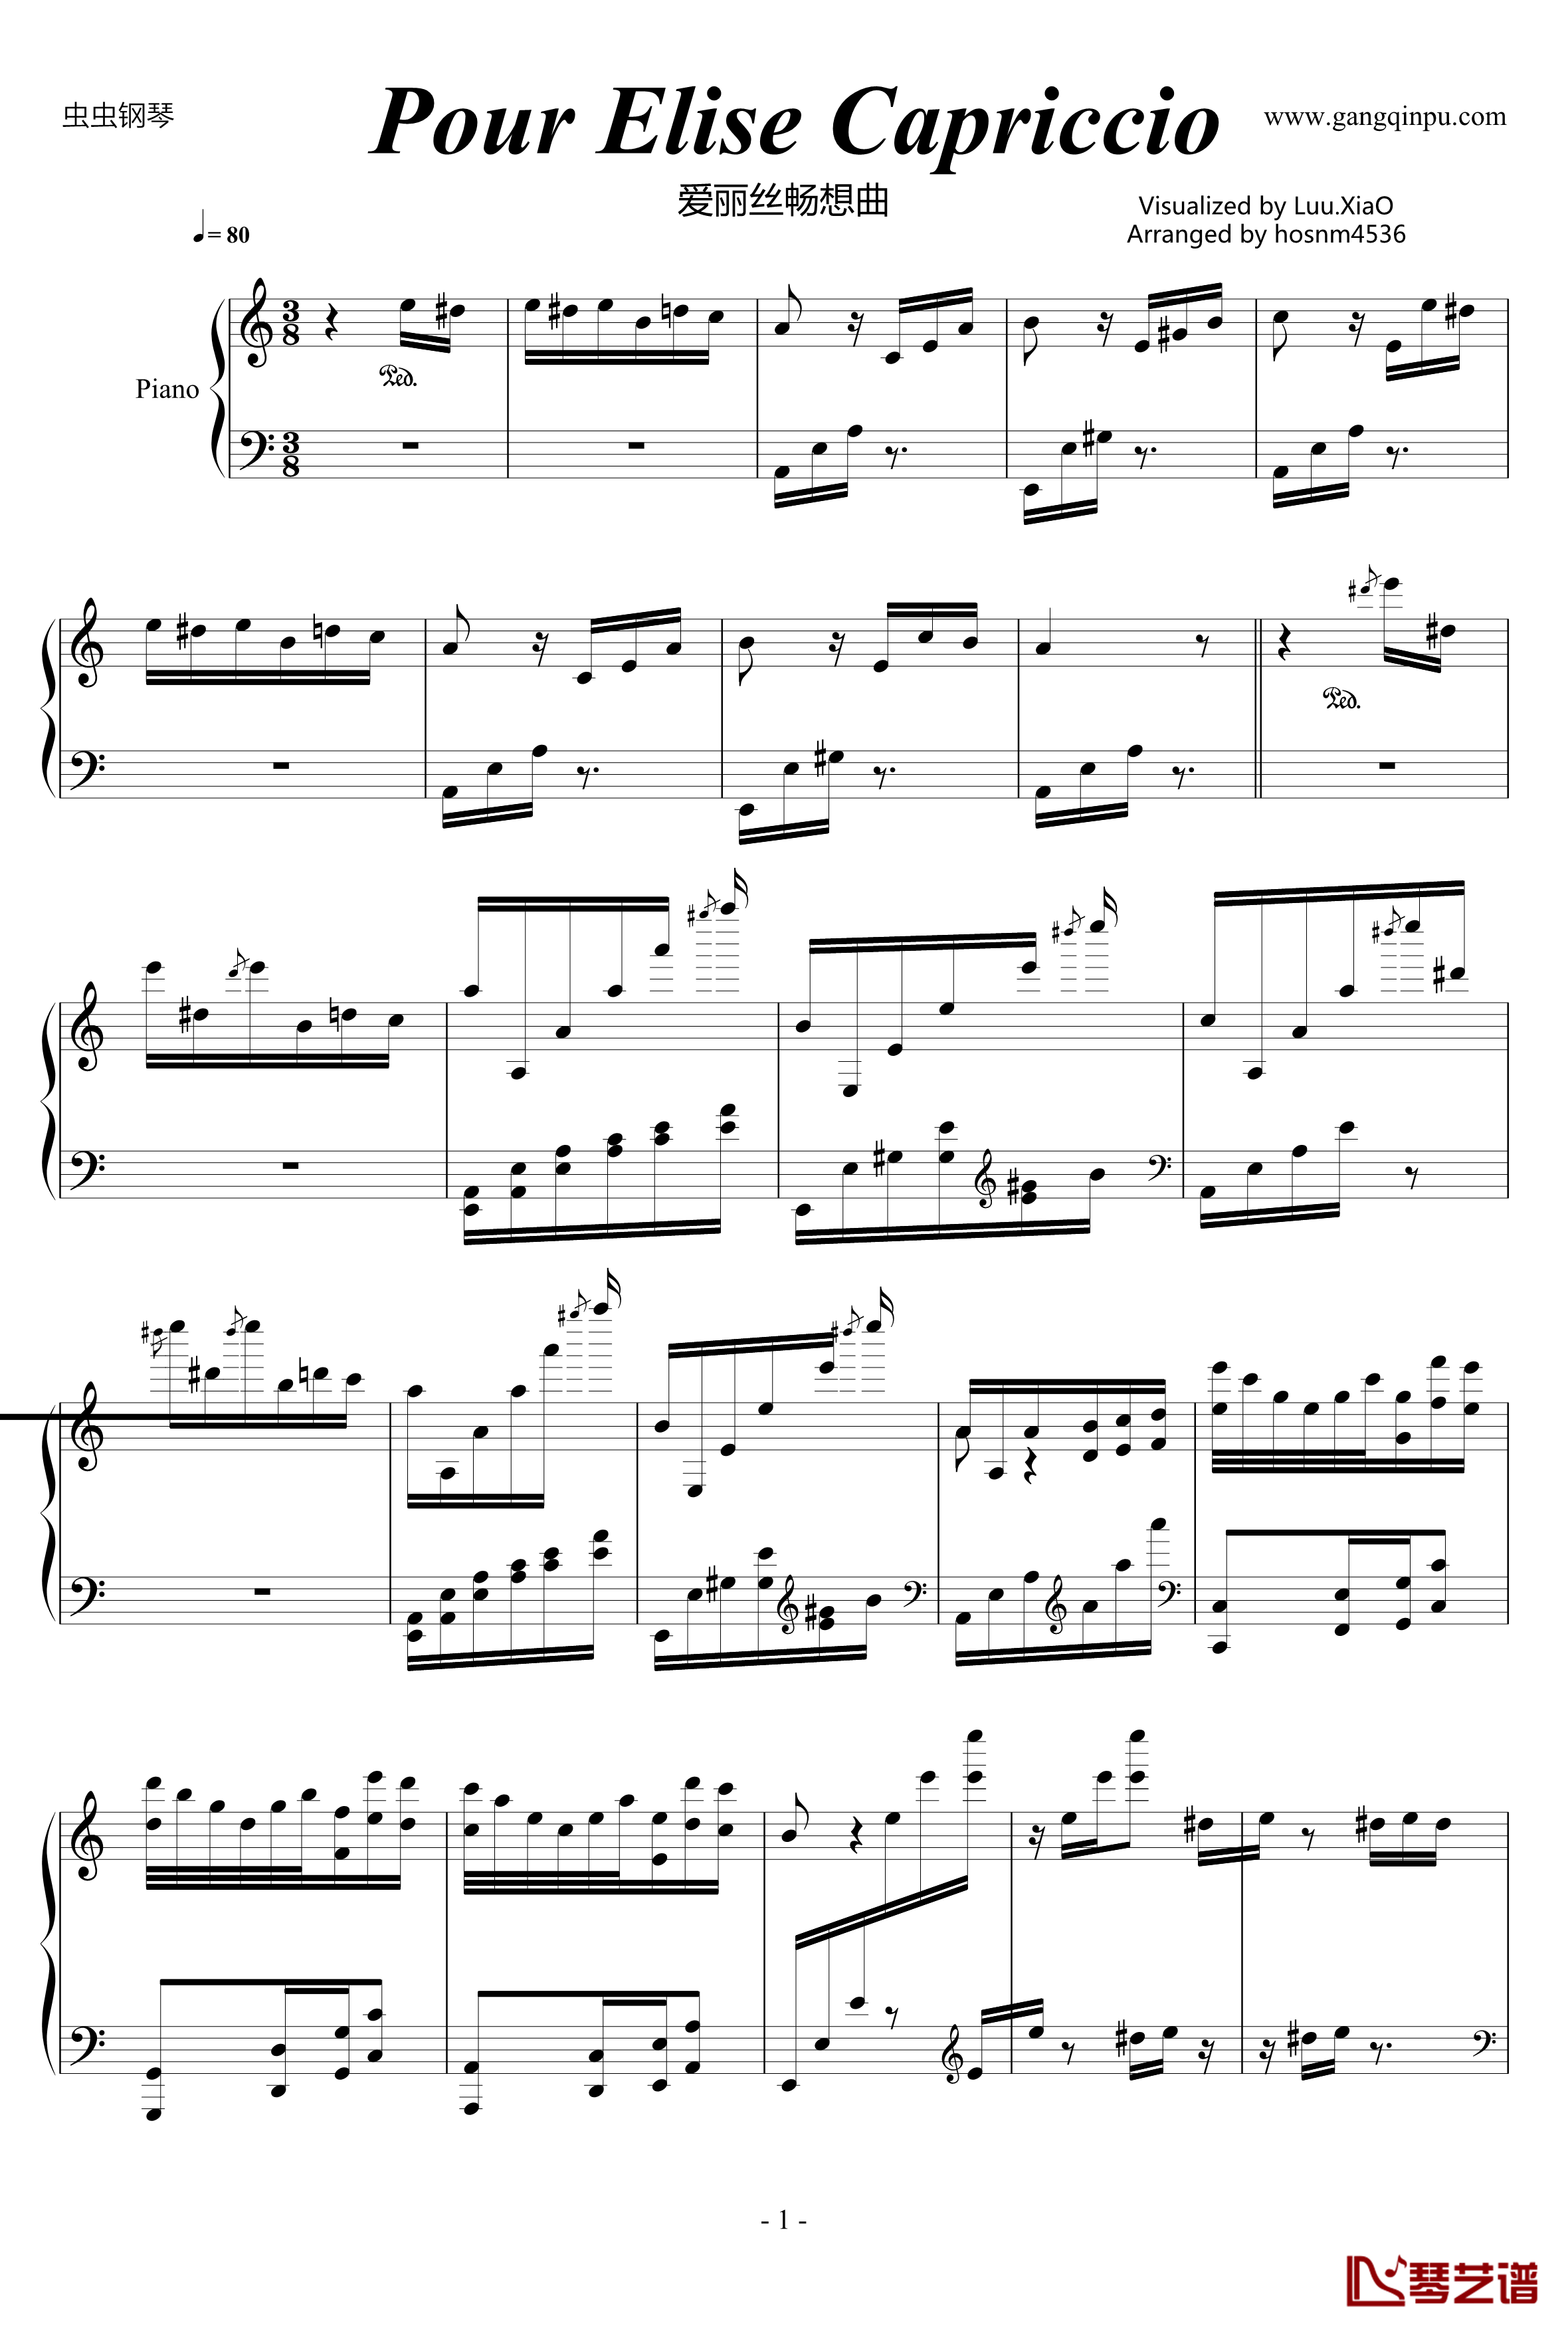 爱丽丝畅想曲钢琴谱-贝多芬-beethoven1